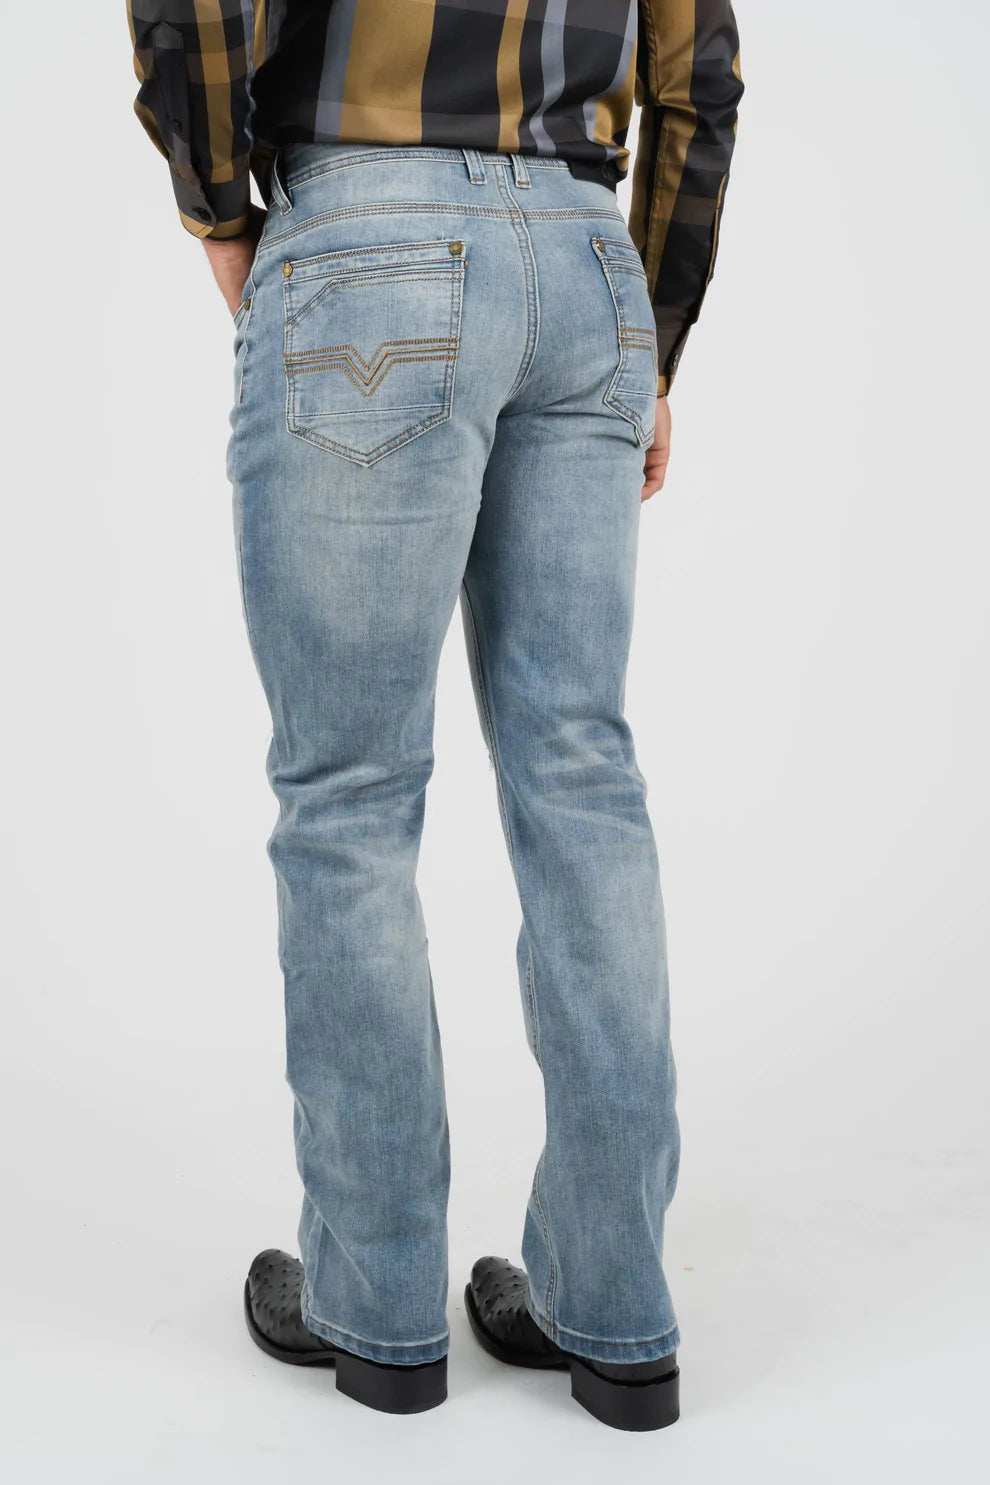 90s Blue Denim Low Rise Jeans | Parallel – motelrocks-com-us